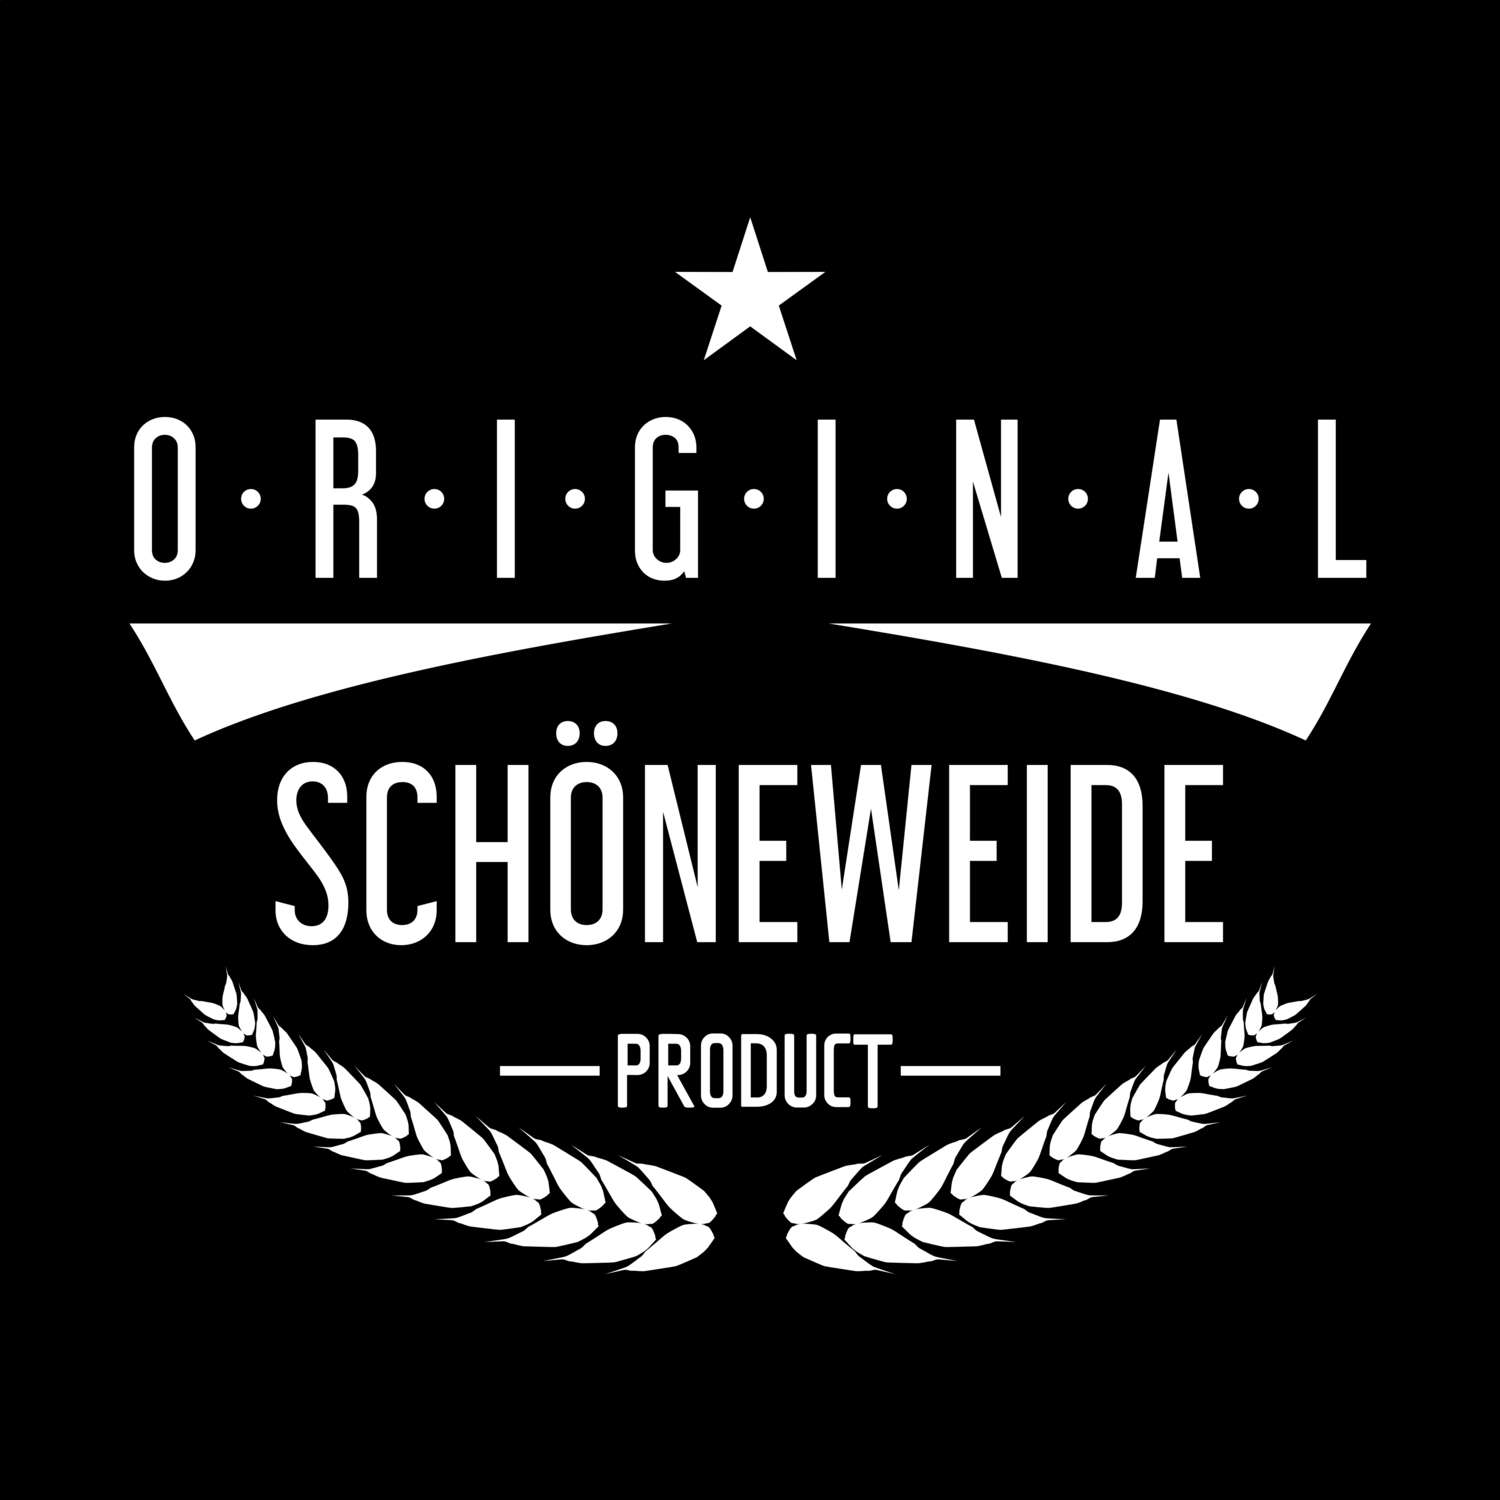 Schöneweide T-Shirt »Original Product«